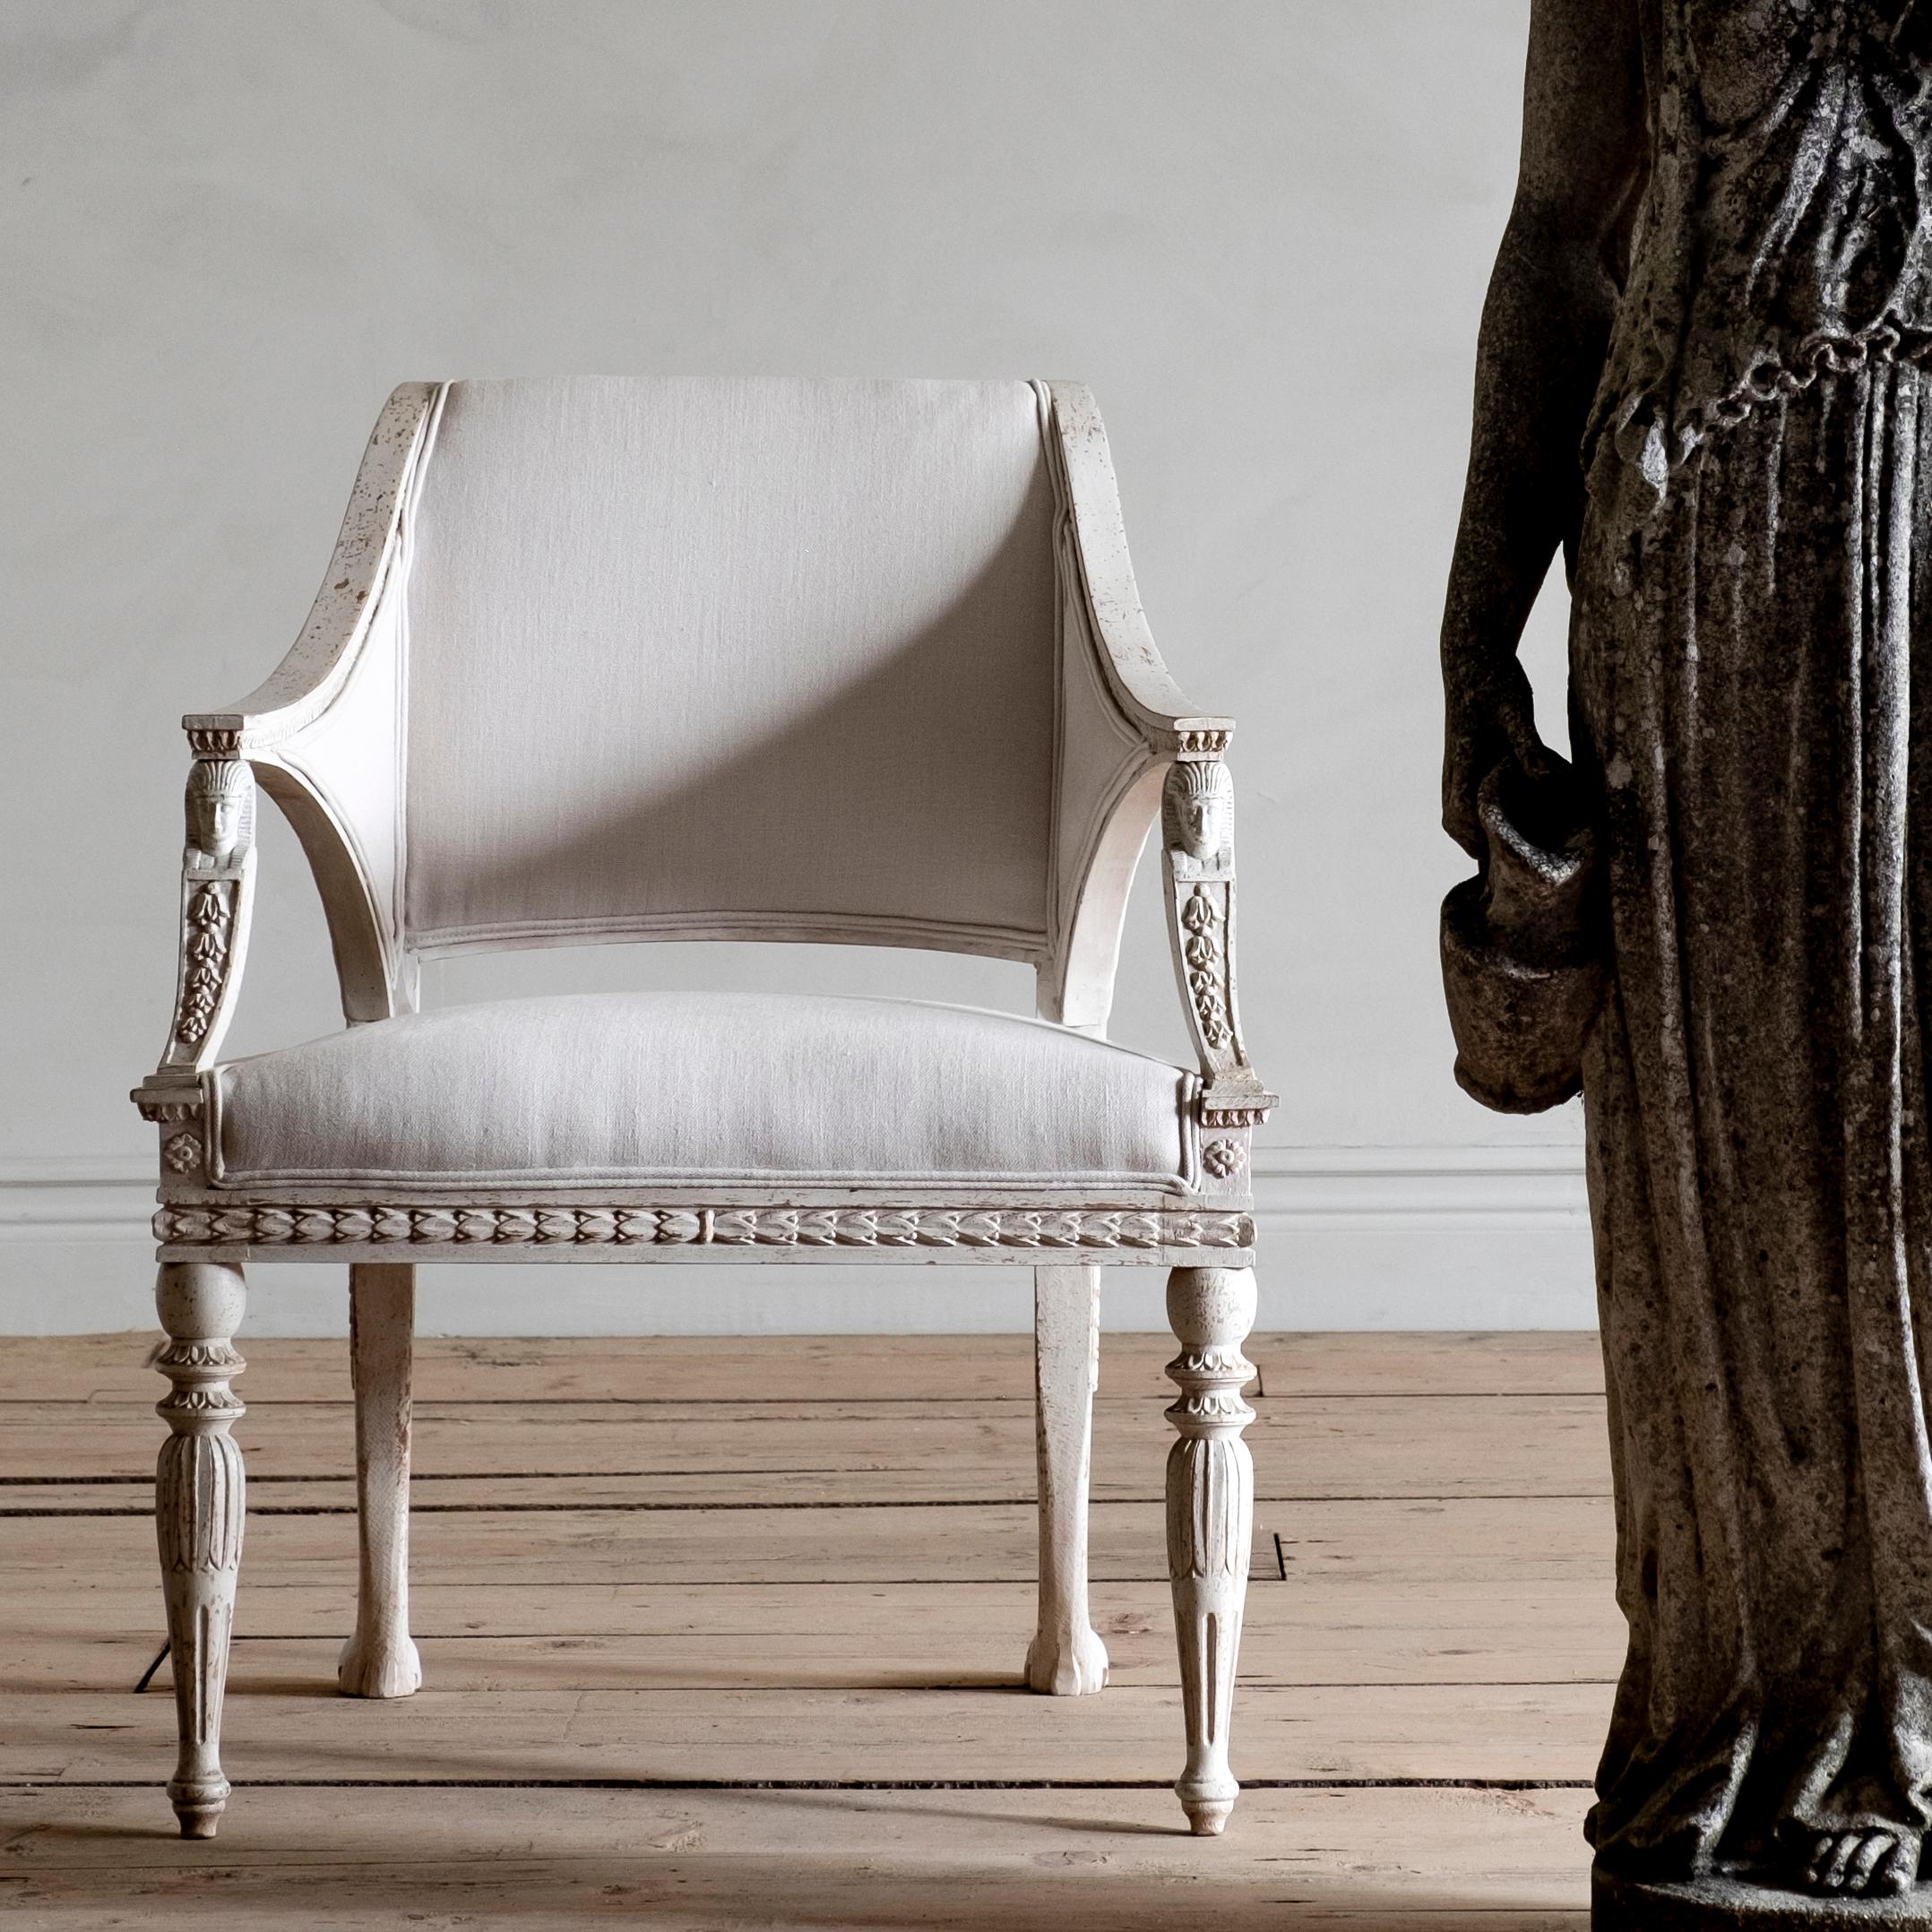 reproductions en édition limitée de D. Larsson, inspirées des plus beaux meubles suédois du XVIIIe au XIXe siècle.

STOCKHOLM, Ce fauteuil de style gustavien s'inspire de l'un des plus beaux fauteuils de la période gustavienne. Ce modèle a été livré